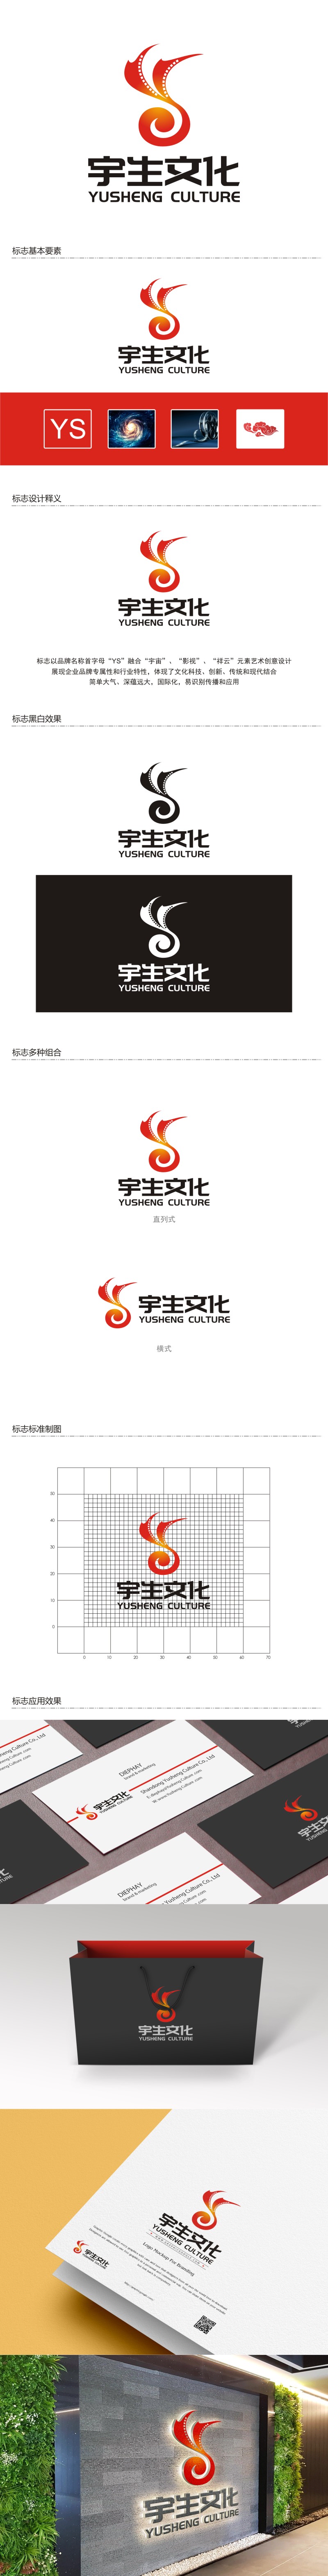 陈国伟的山东宇生文化股份有限公司logo设计